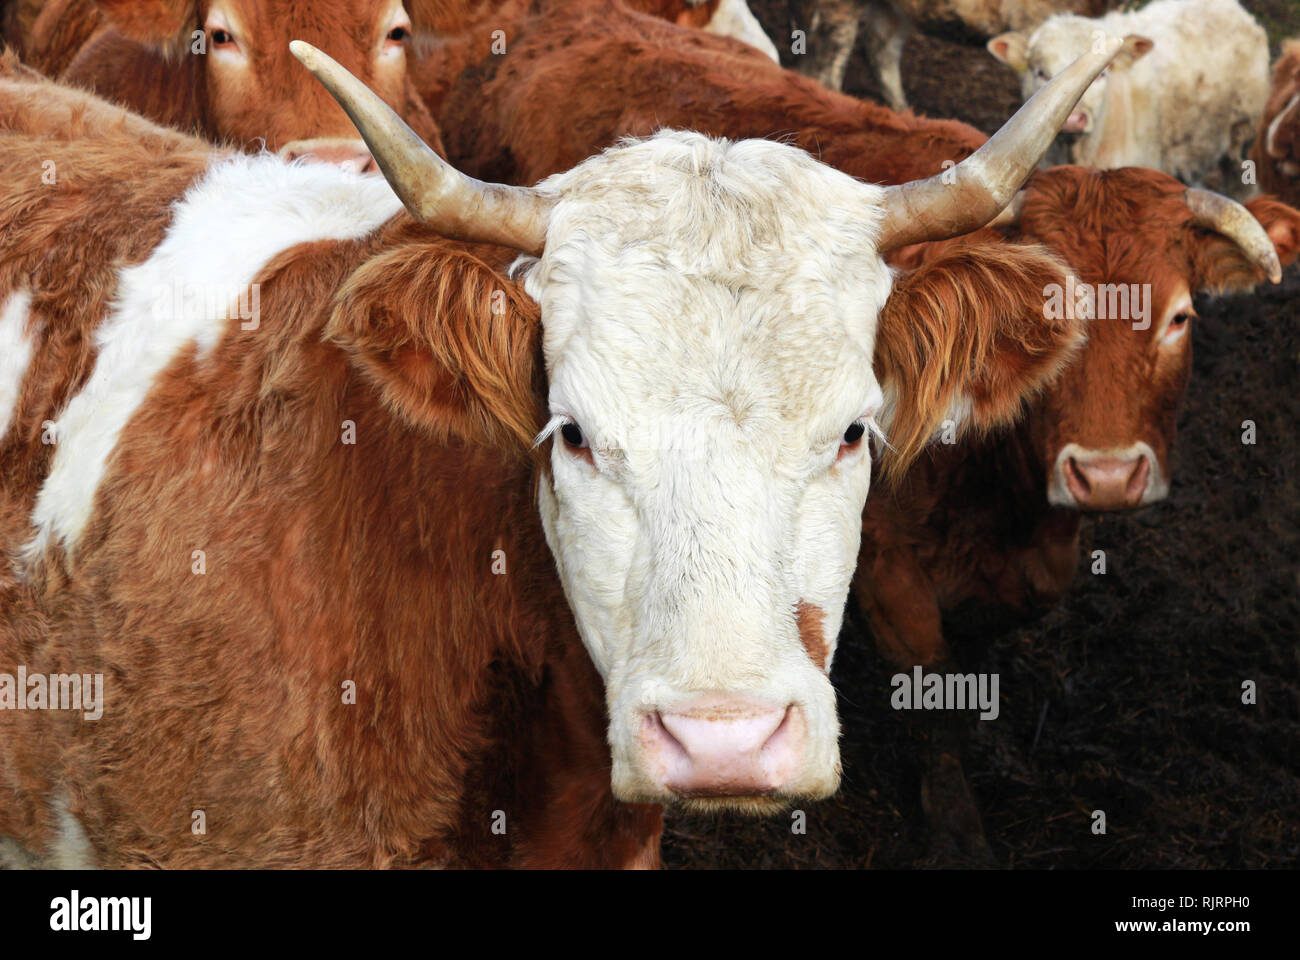 Vache simmental cornu à l'appareil photo, au milieu d'autres bovins, partie d'un élevage Banque D'Images